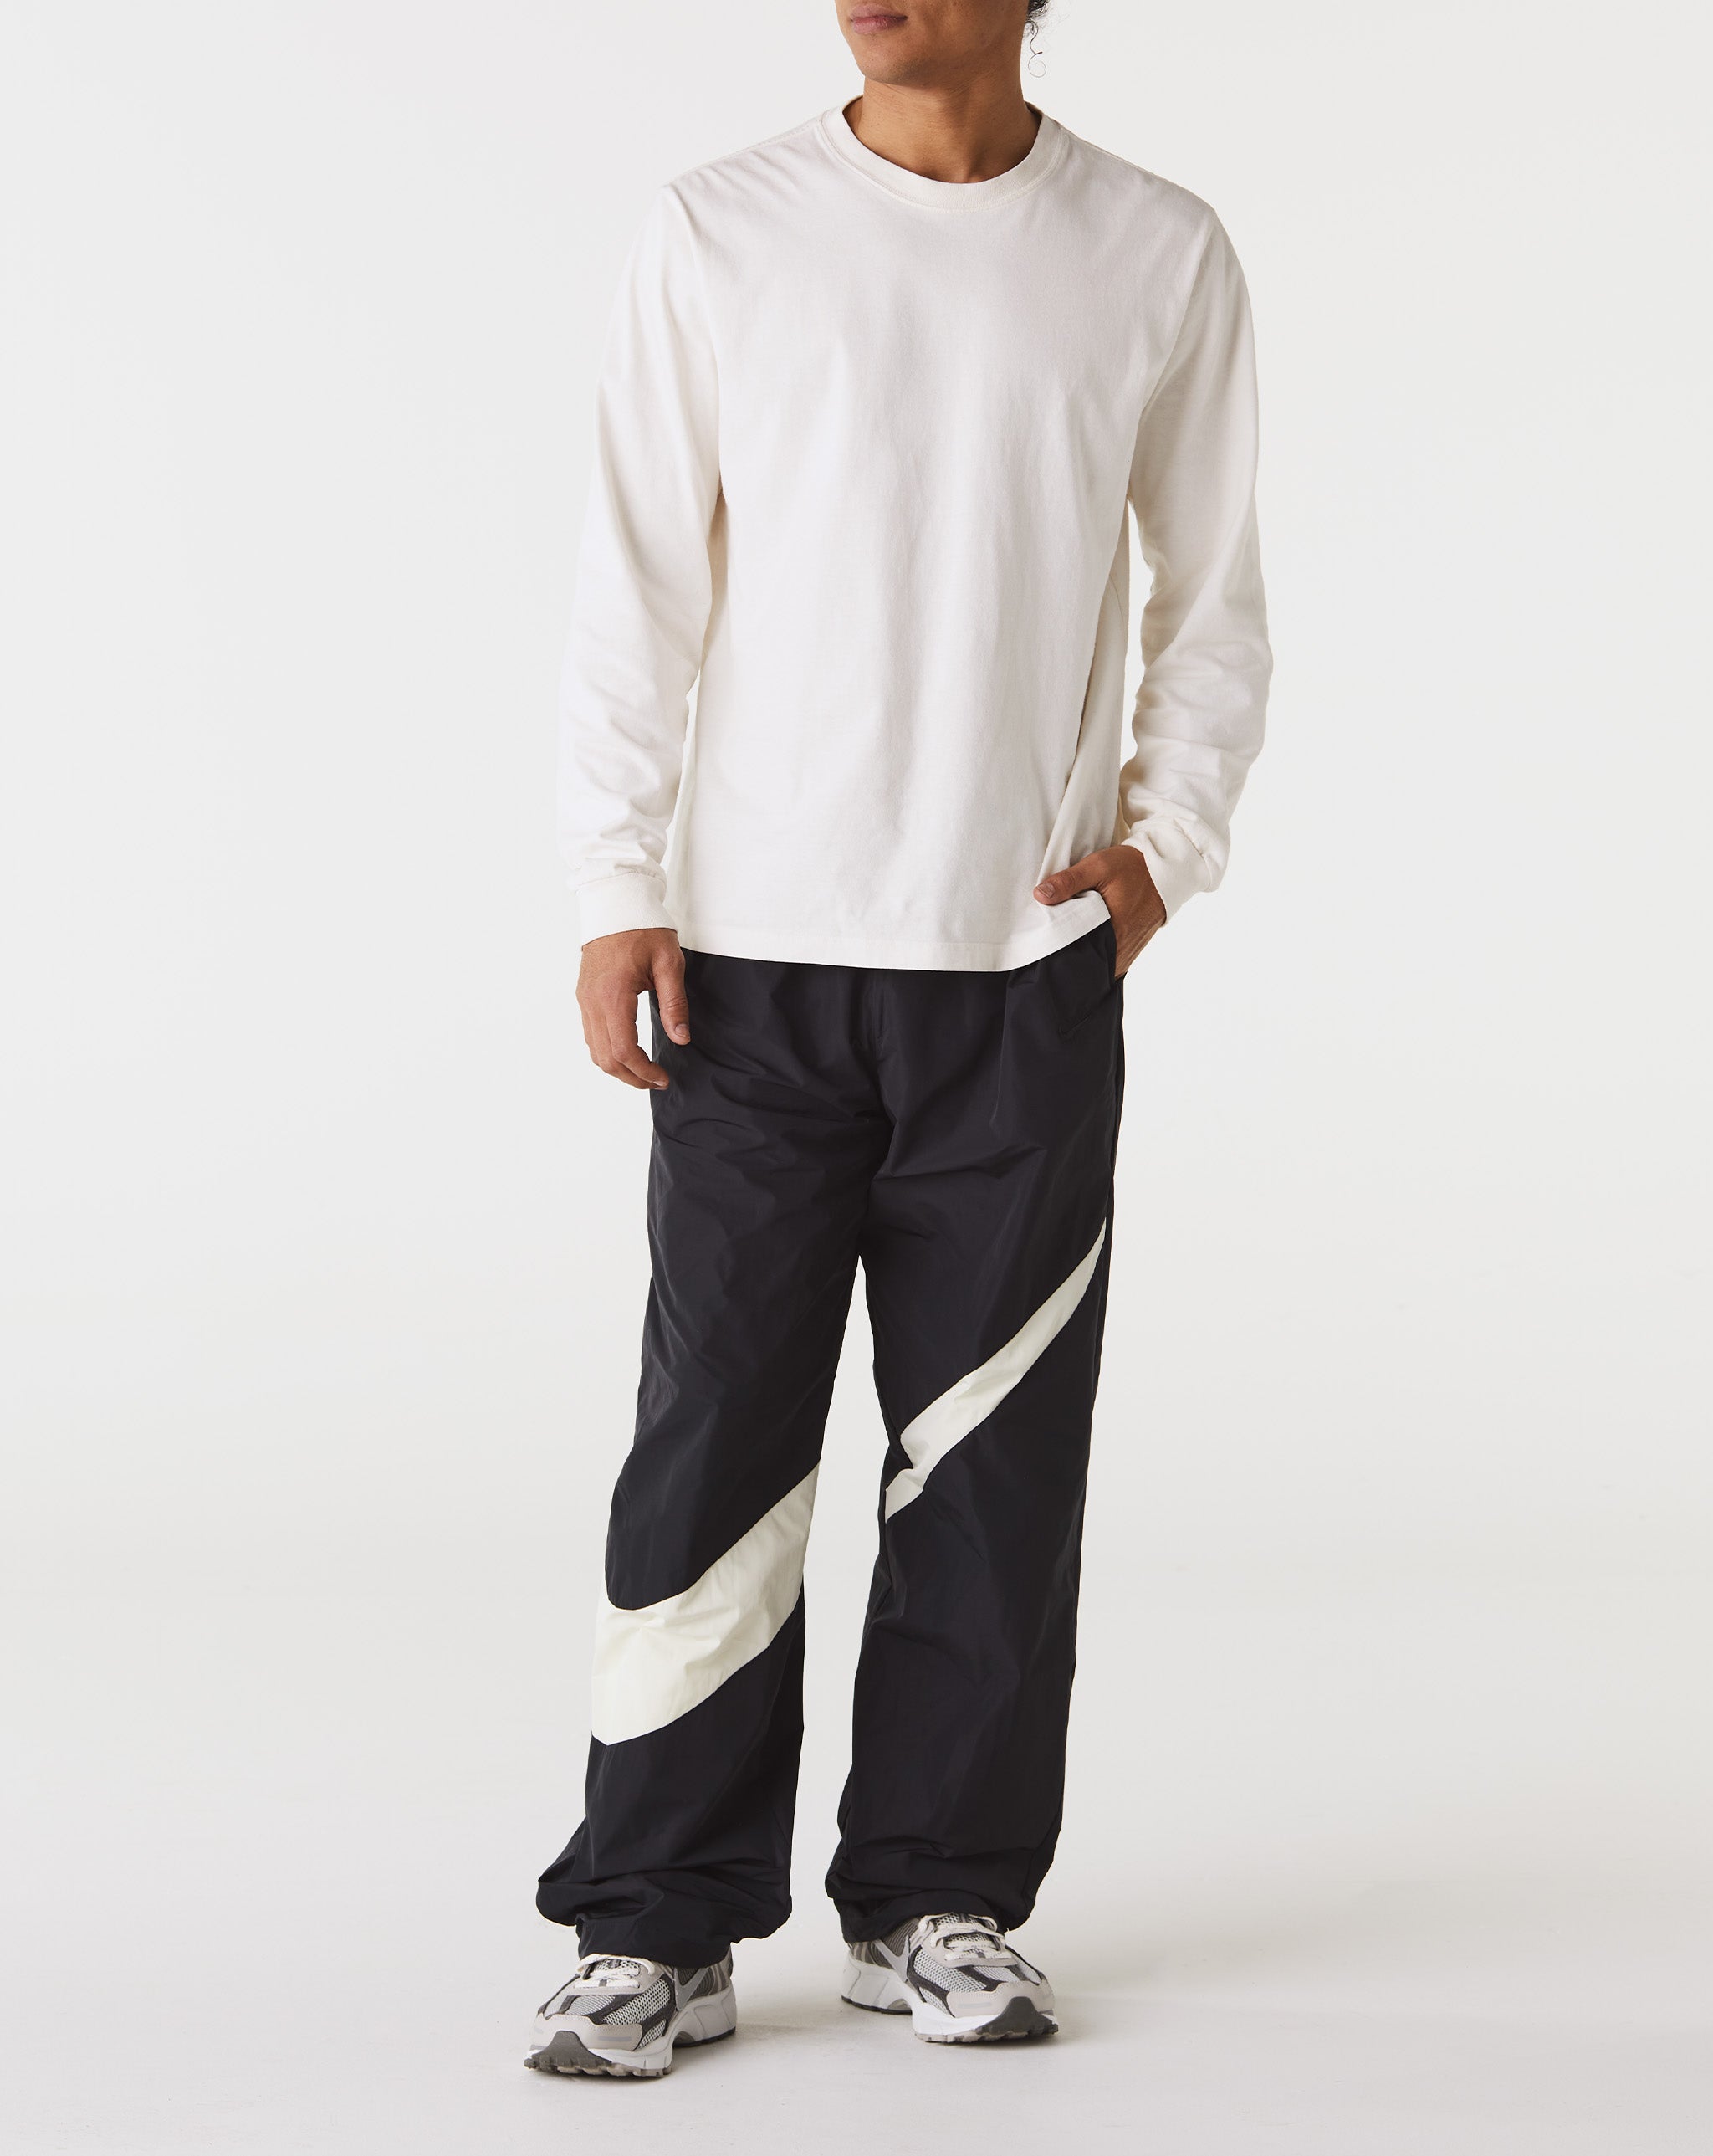 Nike Biquini Hot pants asos Cintura Alta Frente Ún  - Cheap Erlebniswelt-fliegenfischen Jordan outlet